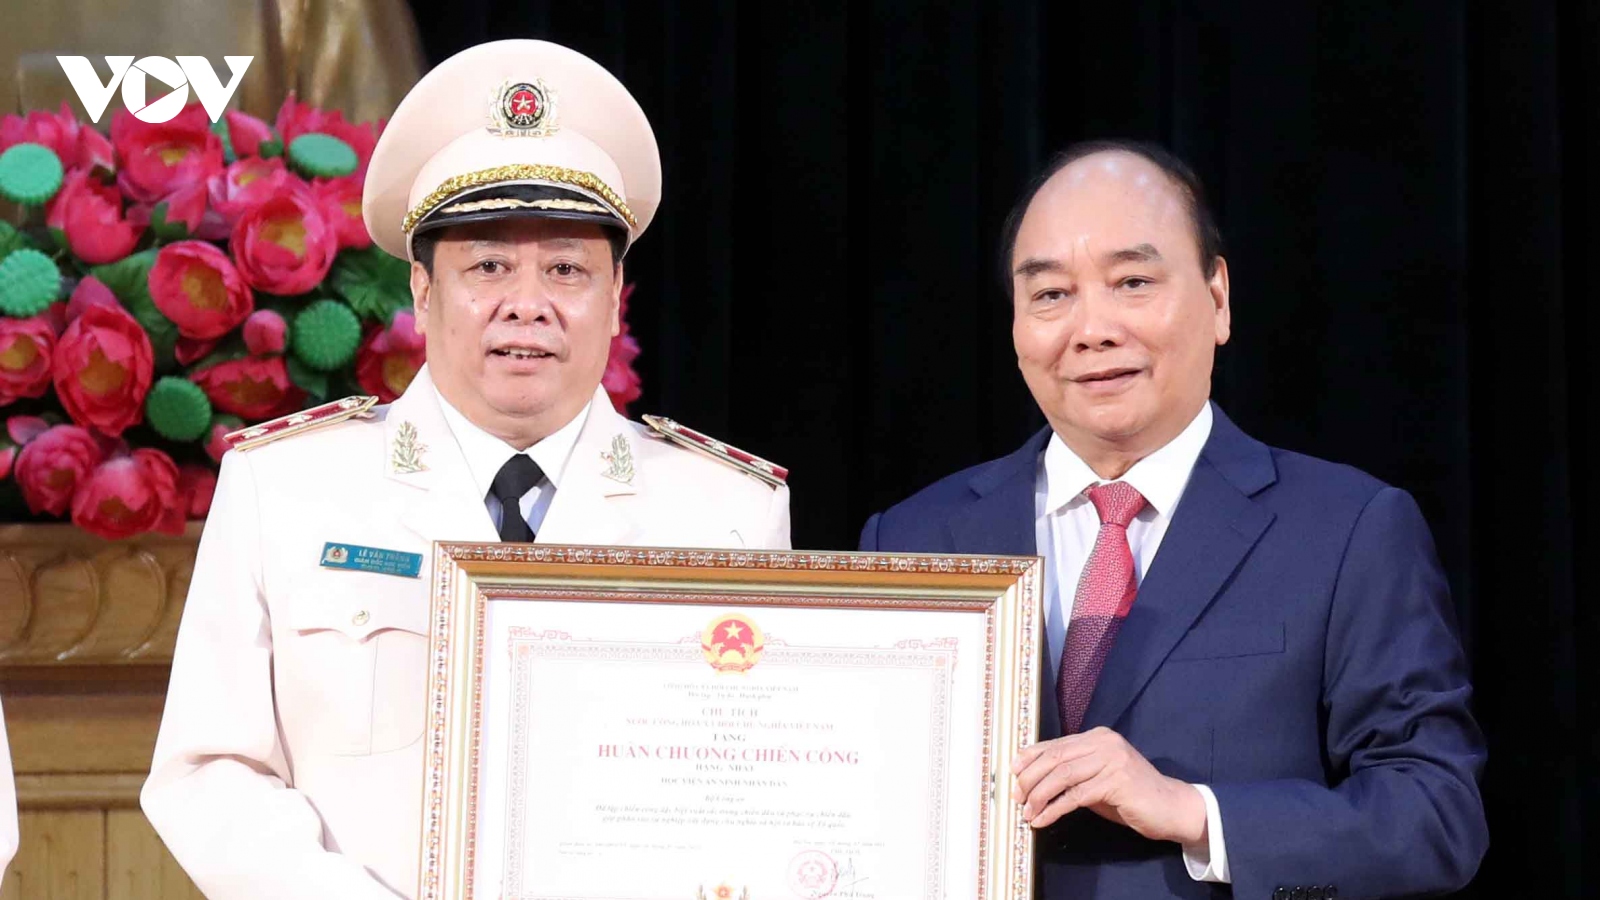 Chủ tịch nước trao Huân chương Chiến công hạng Nhất cho Học viện An ninh nhân dân